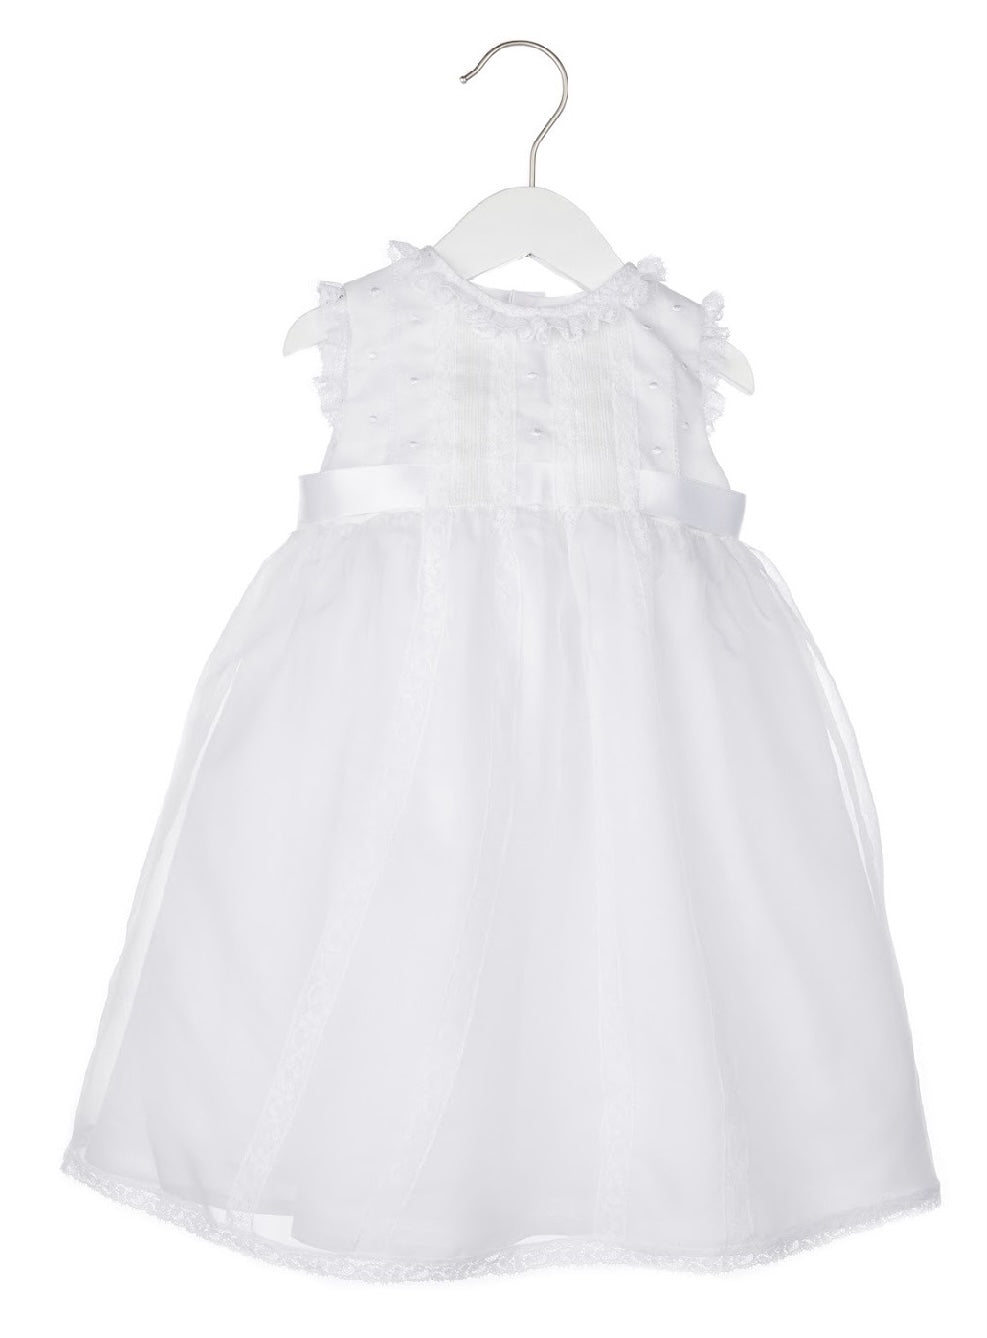 Baby Girls White Bow Organza Christening Dress -  childrensspecialoccasionwear.co.uk